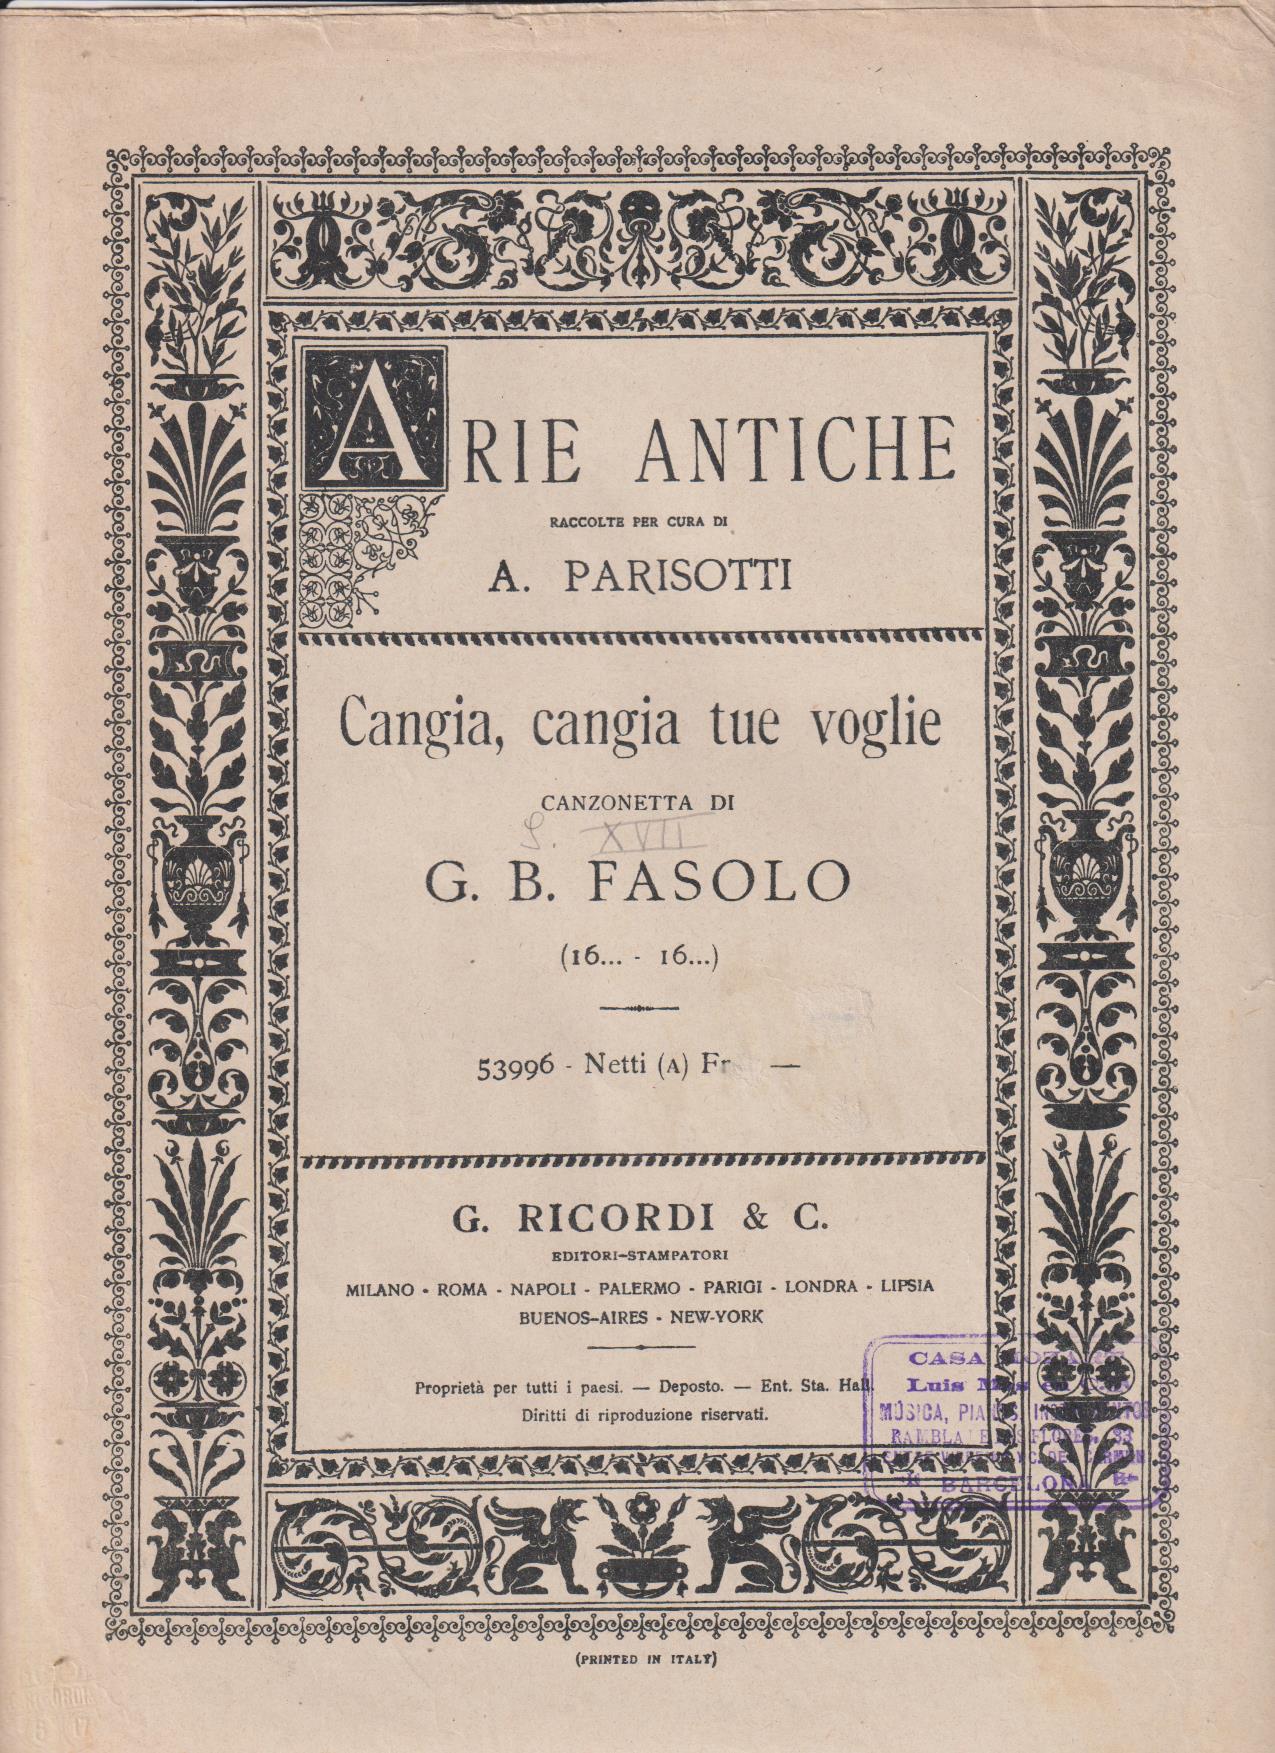 Arie Antiche. A. Parisoti. Cangia, cangia tue voglie di G.B. Fasolo (32x23) 5 páginas